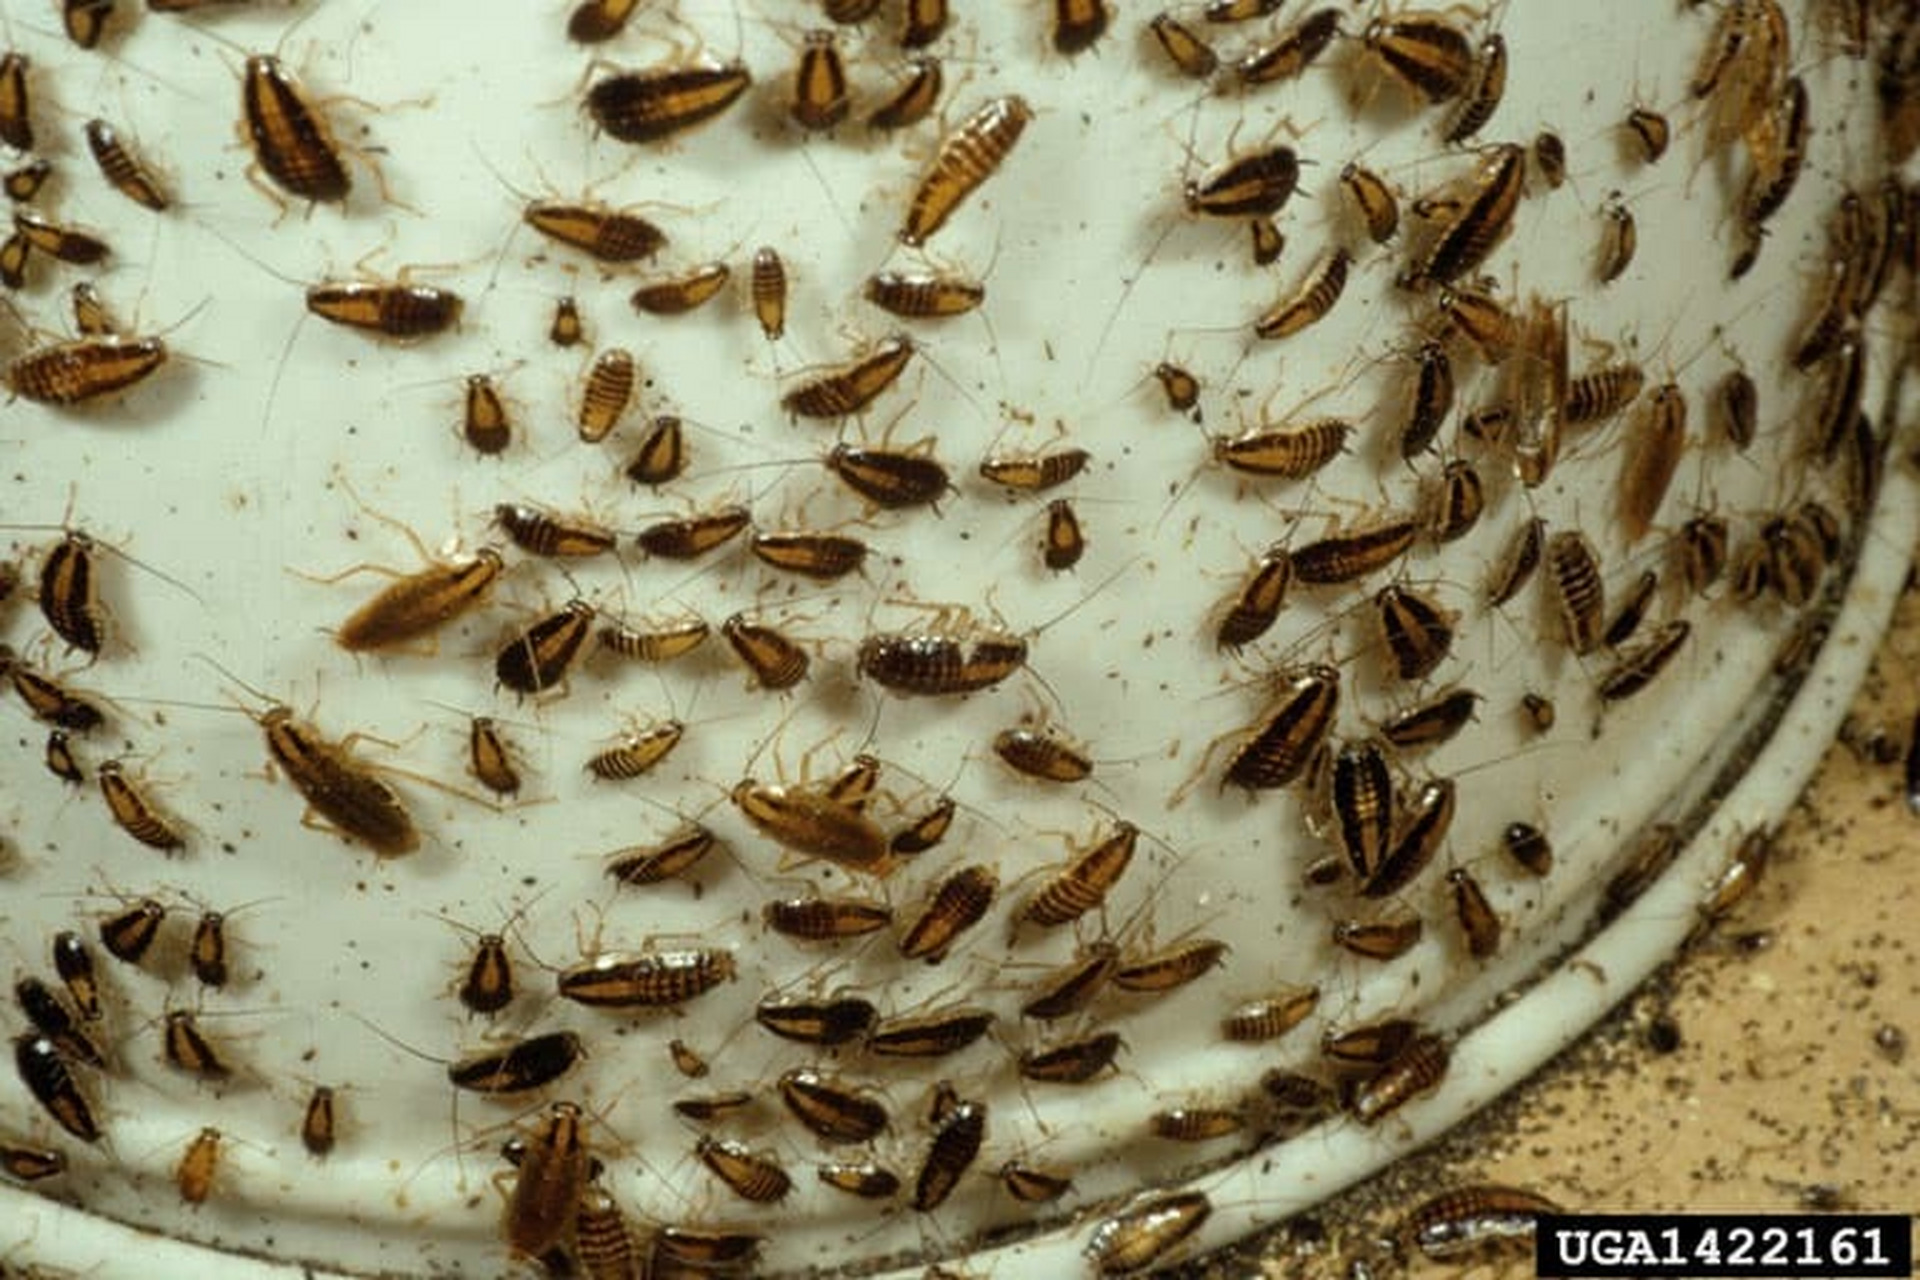 德国小蠊 德国小蠊是人们在家中发现的最常见的蟑螂比起其他栖息地,